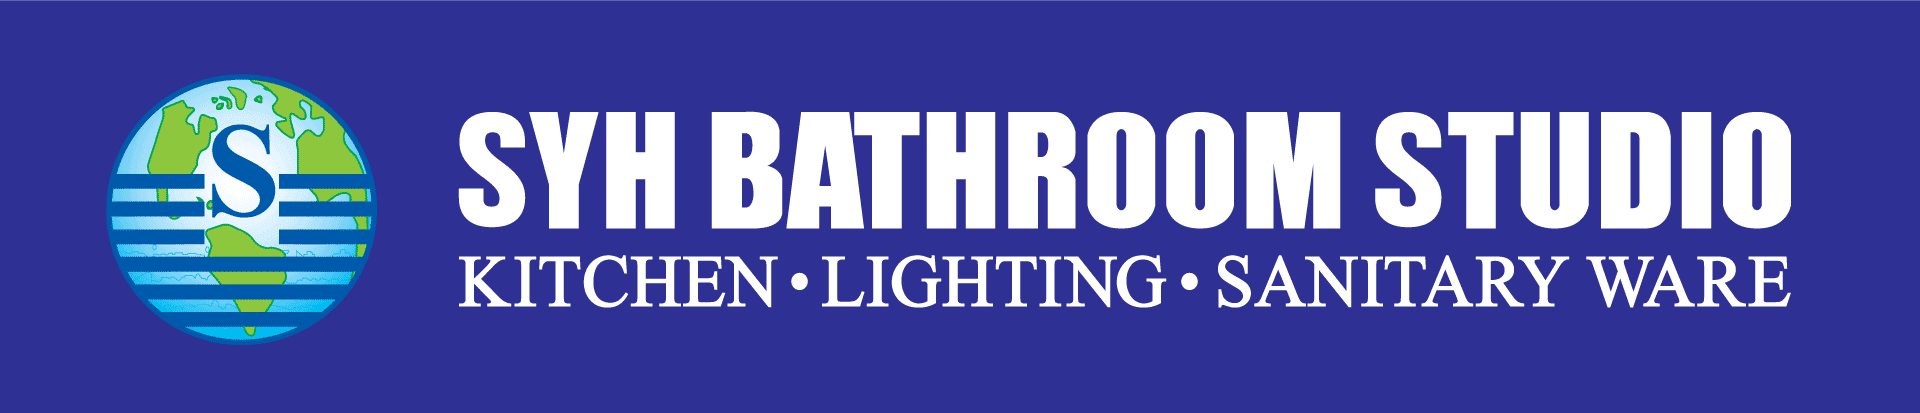 syhbathroom logo